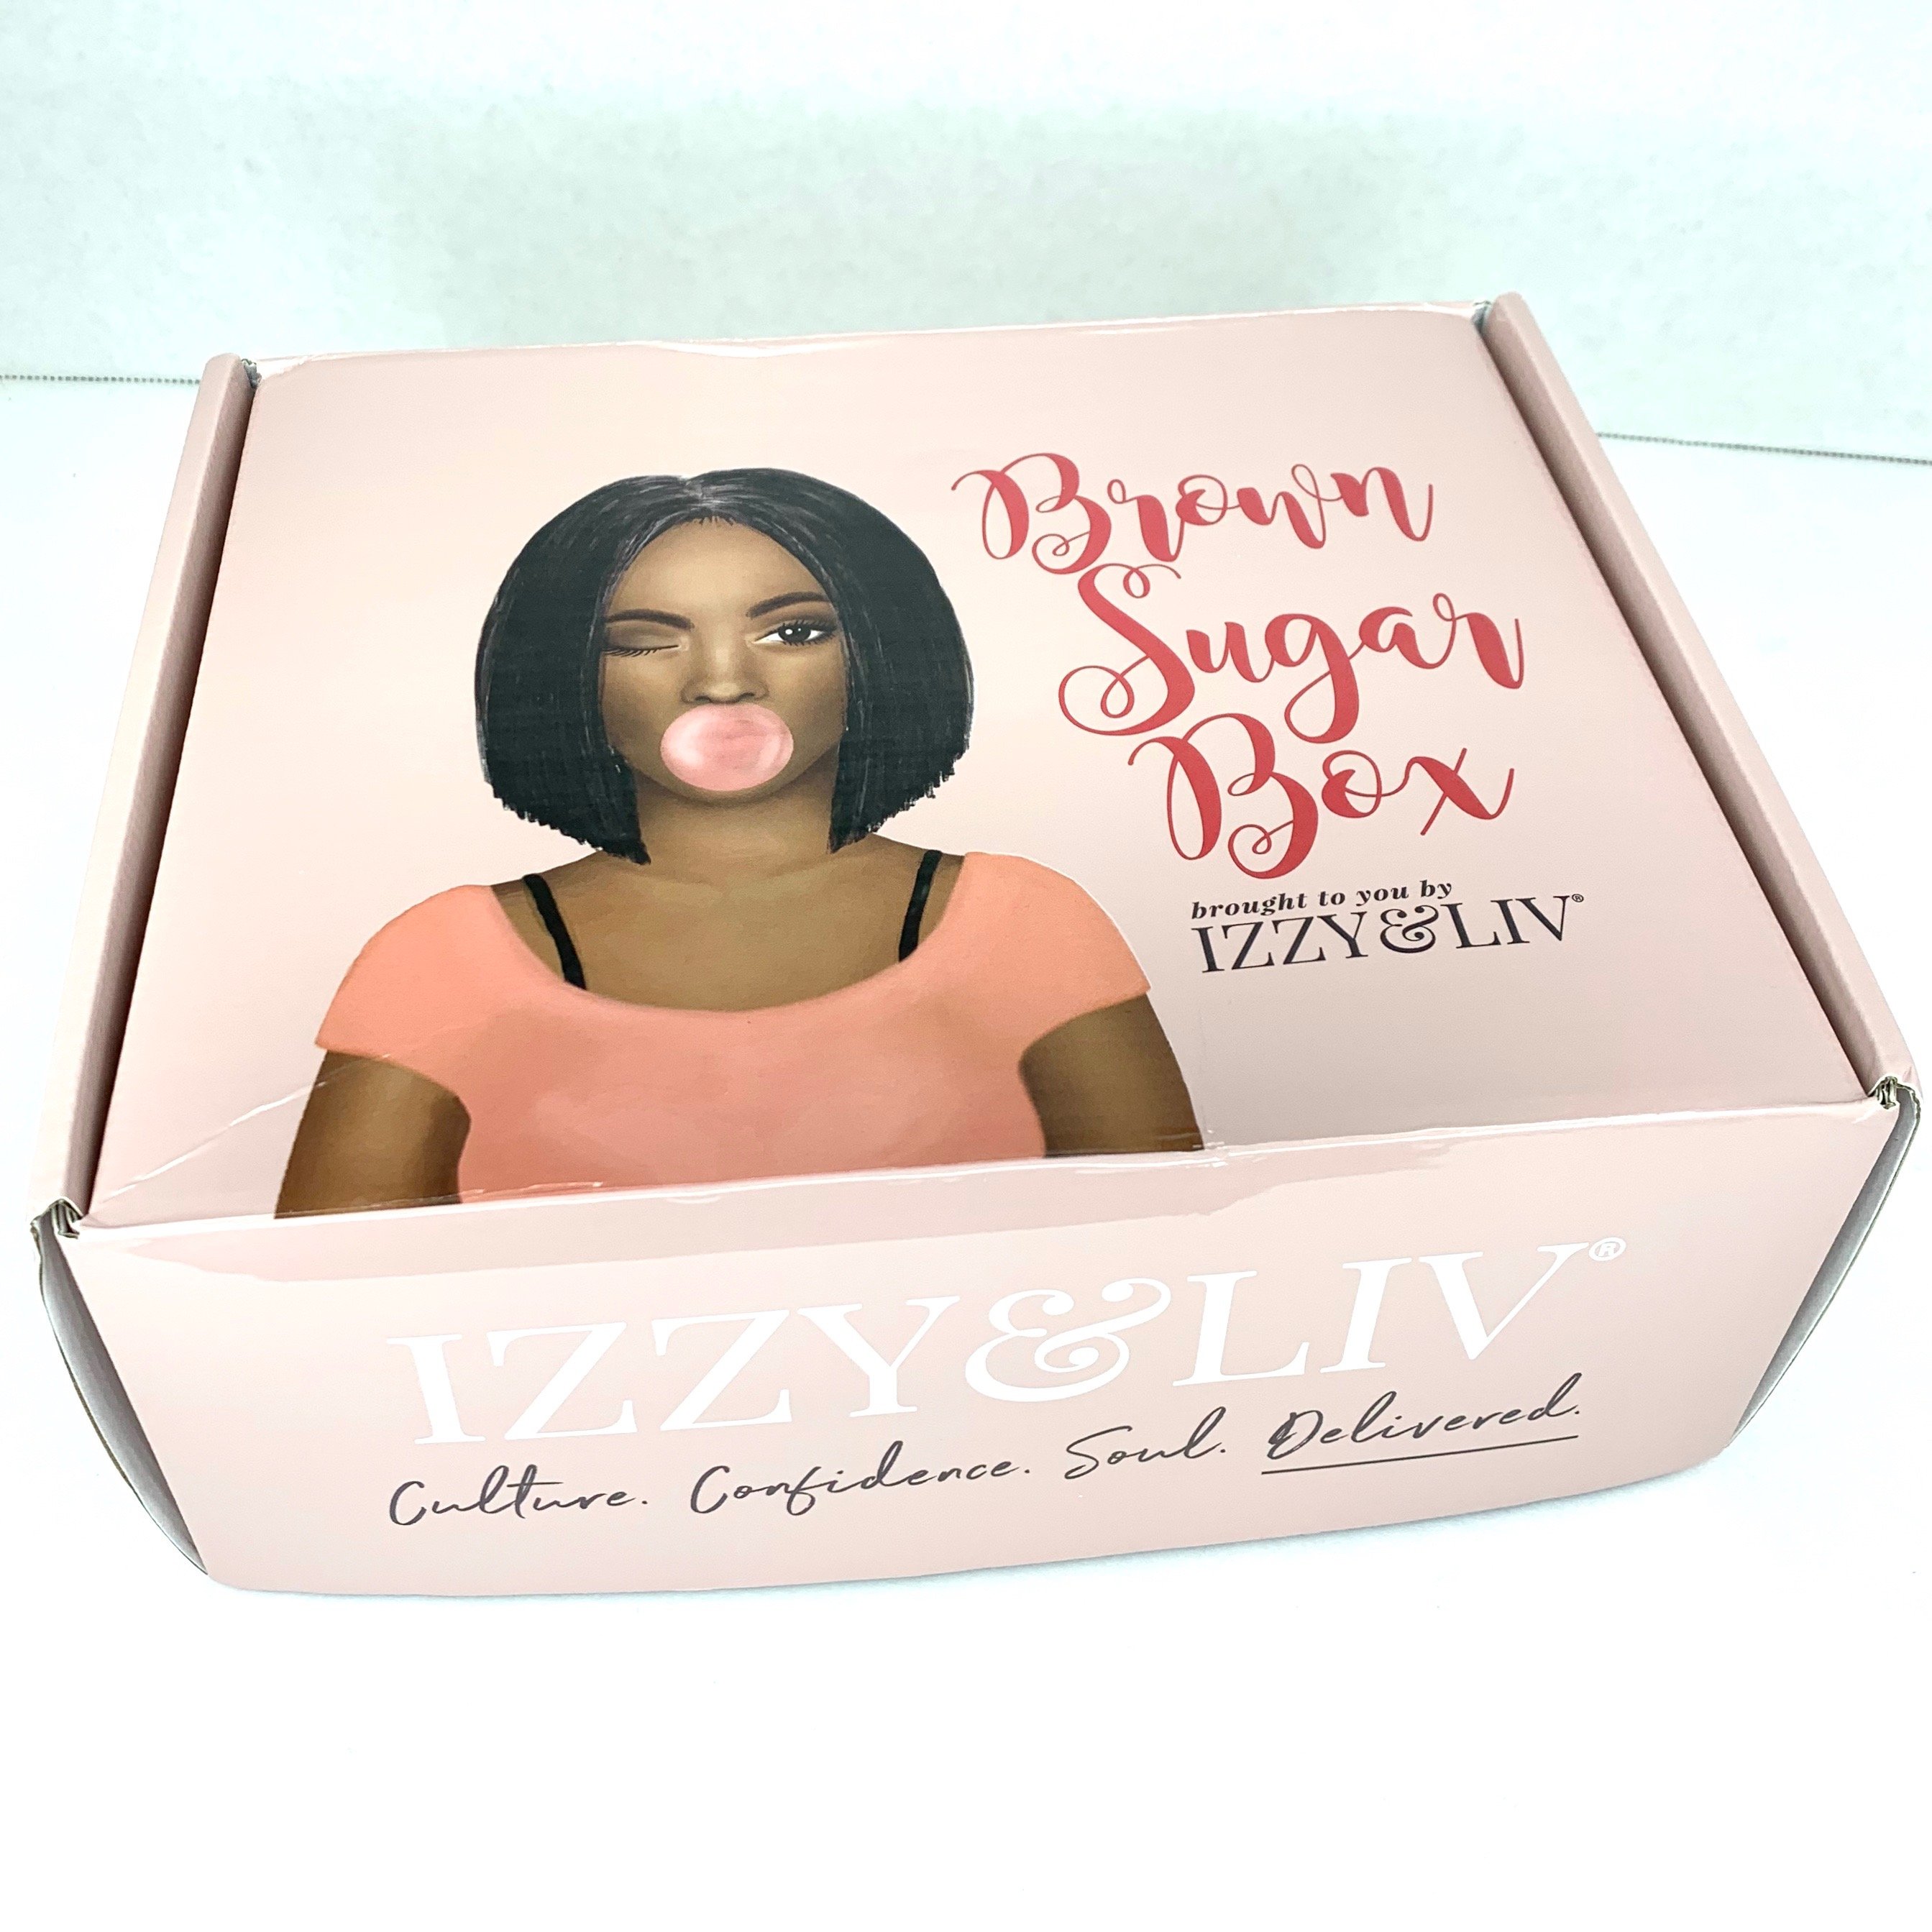 Brown Sugar Box Subscription Review + Coupon – May 2020